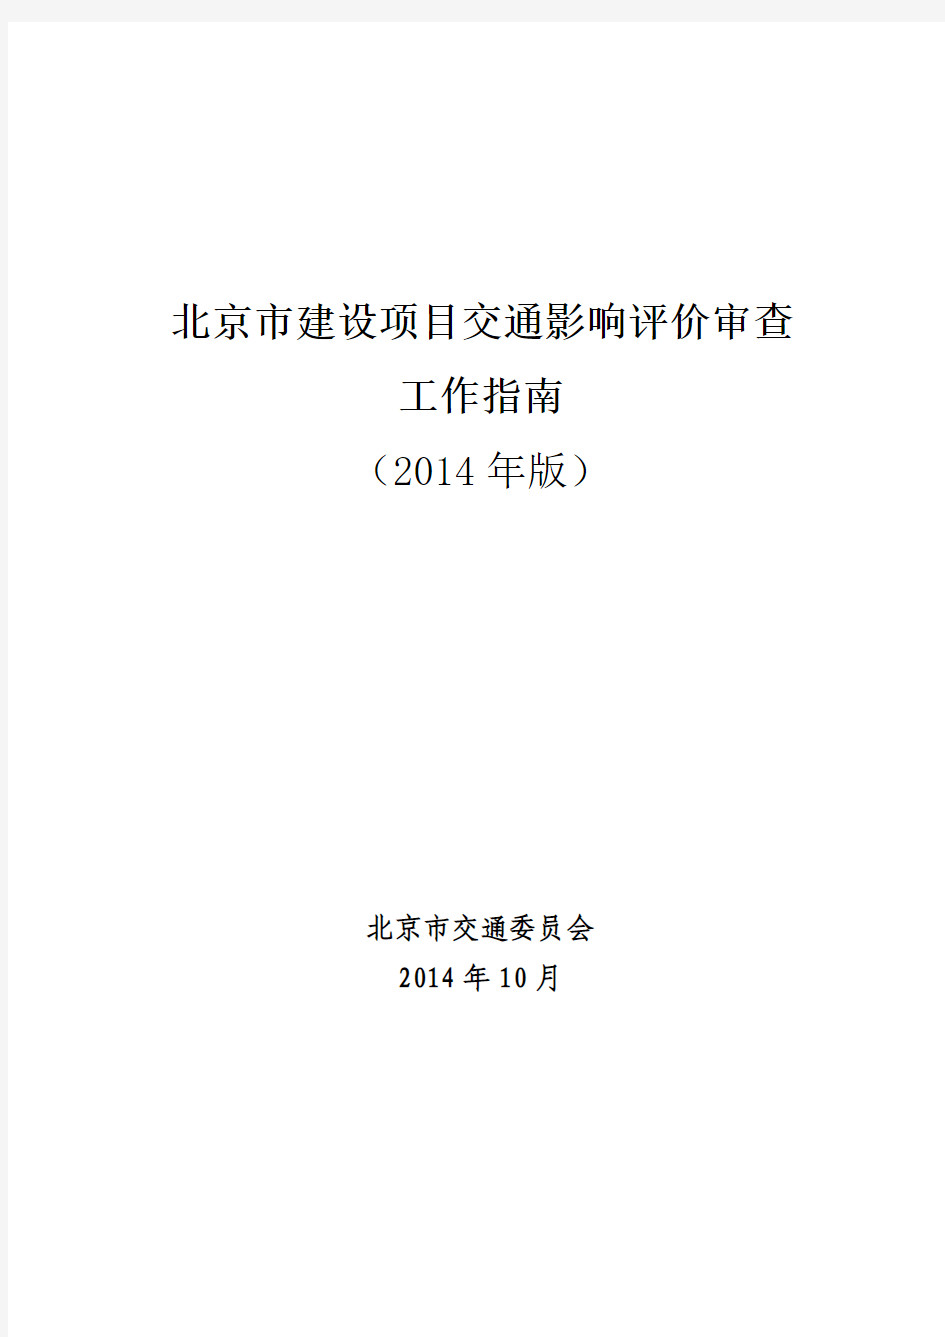 北京市建设项目交通影响评价审查工作指南(2014 年版)